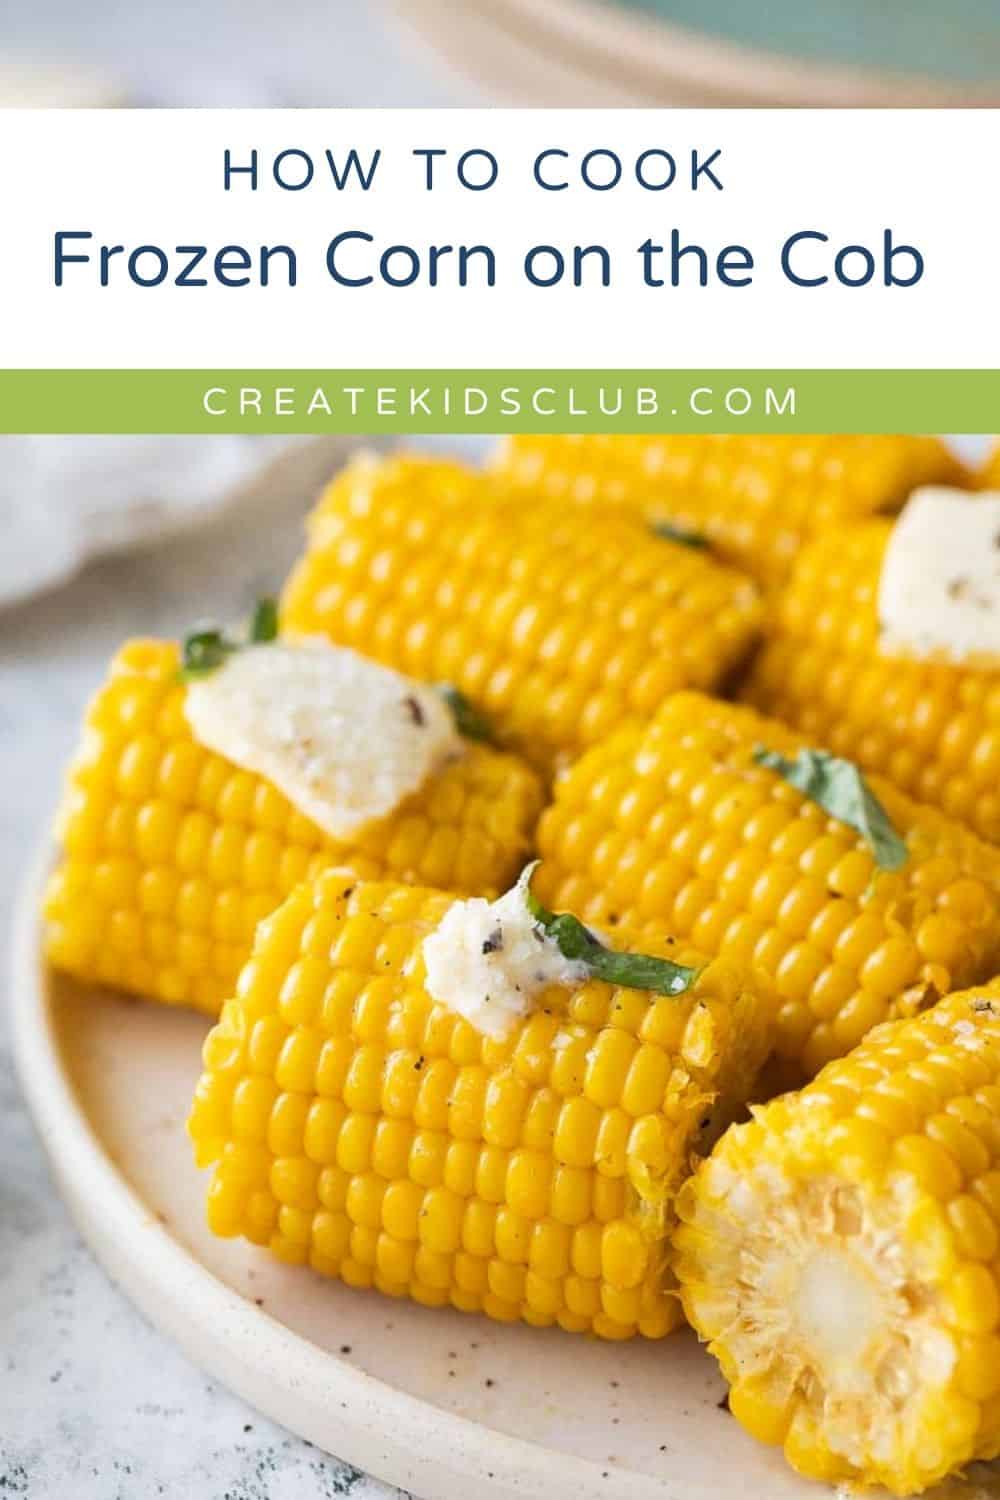 Pin of corn on the cob